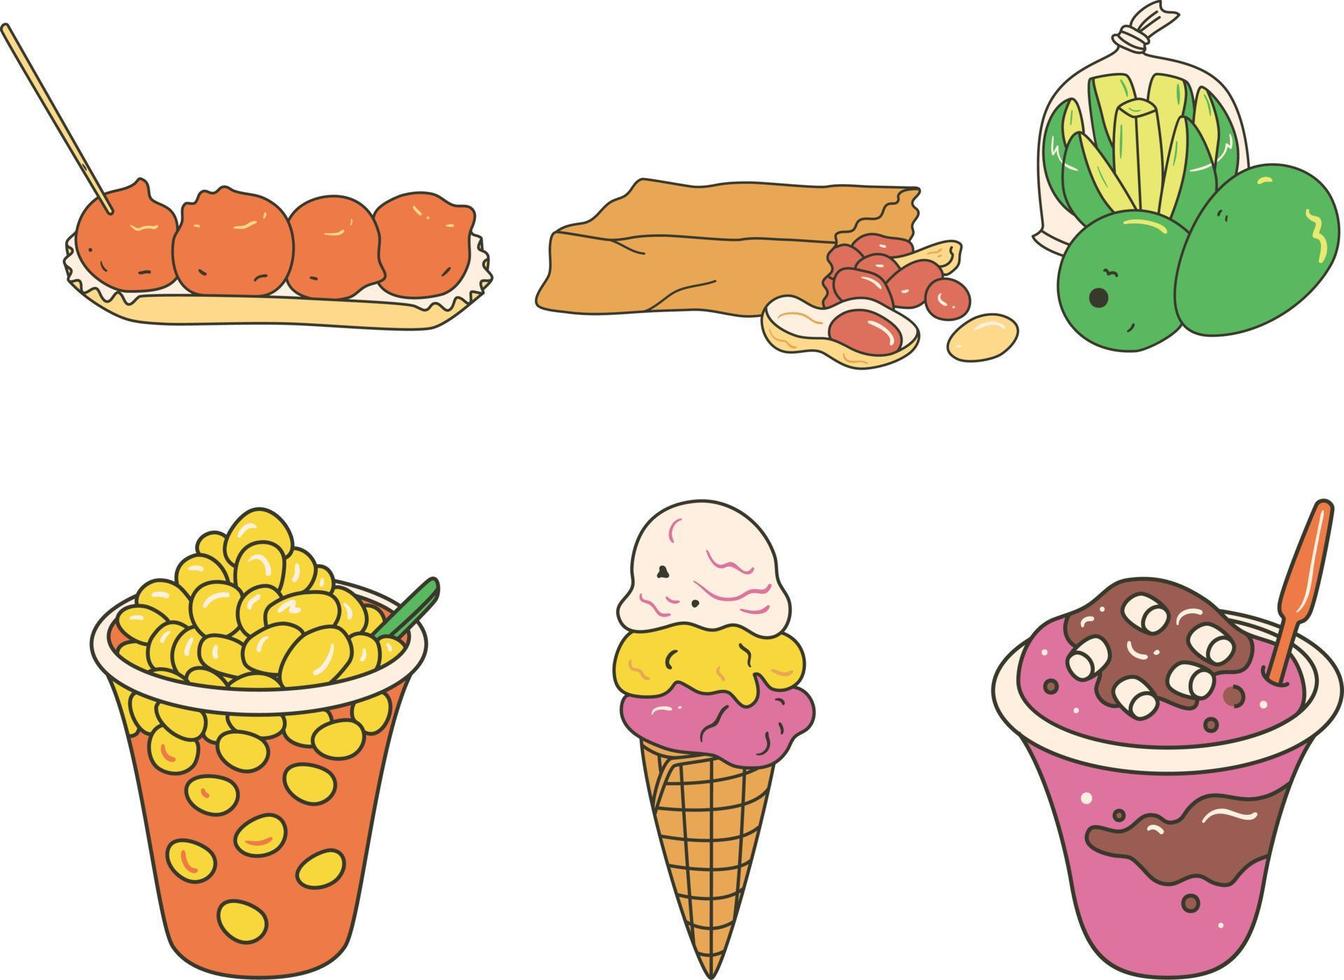 hielo crema, Fruta y chocolate en blanco antecedentes. vector ilustración.